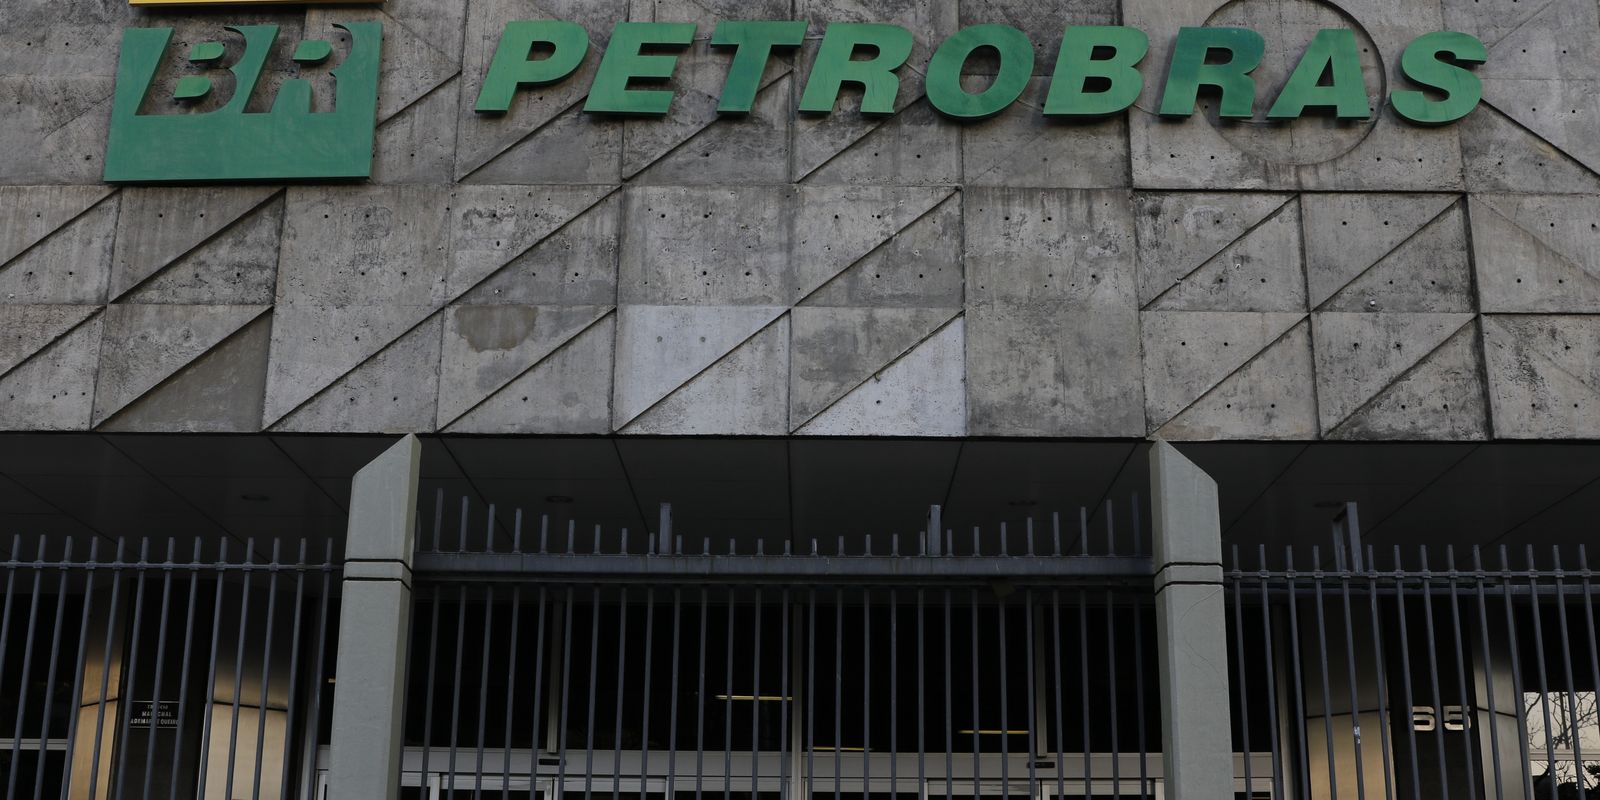 Plano estratégico da Petrobras prevê investimentos de US$ 102 bilhões